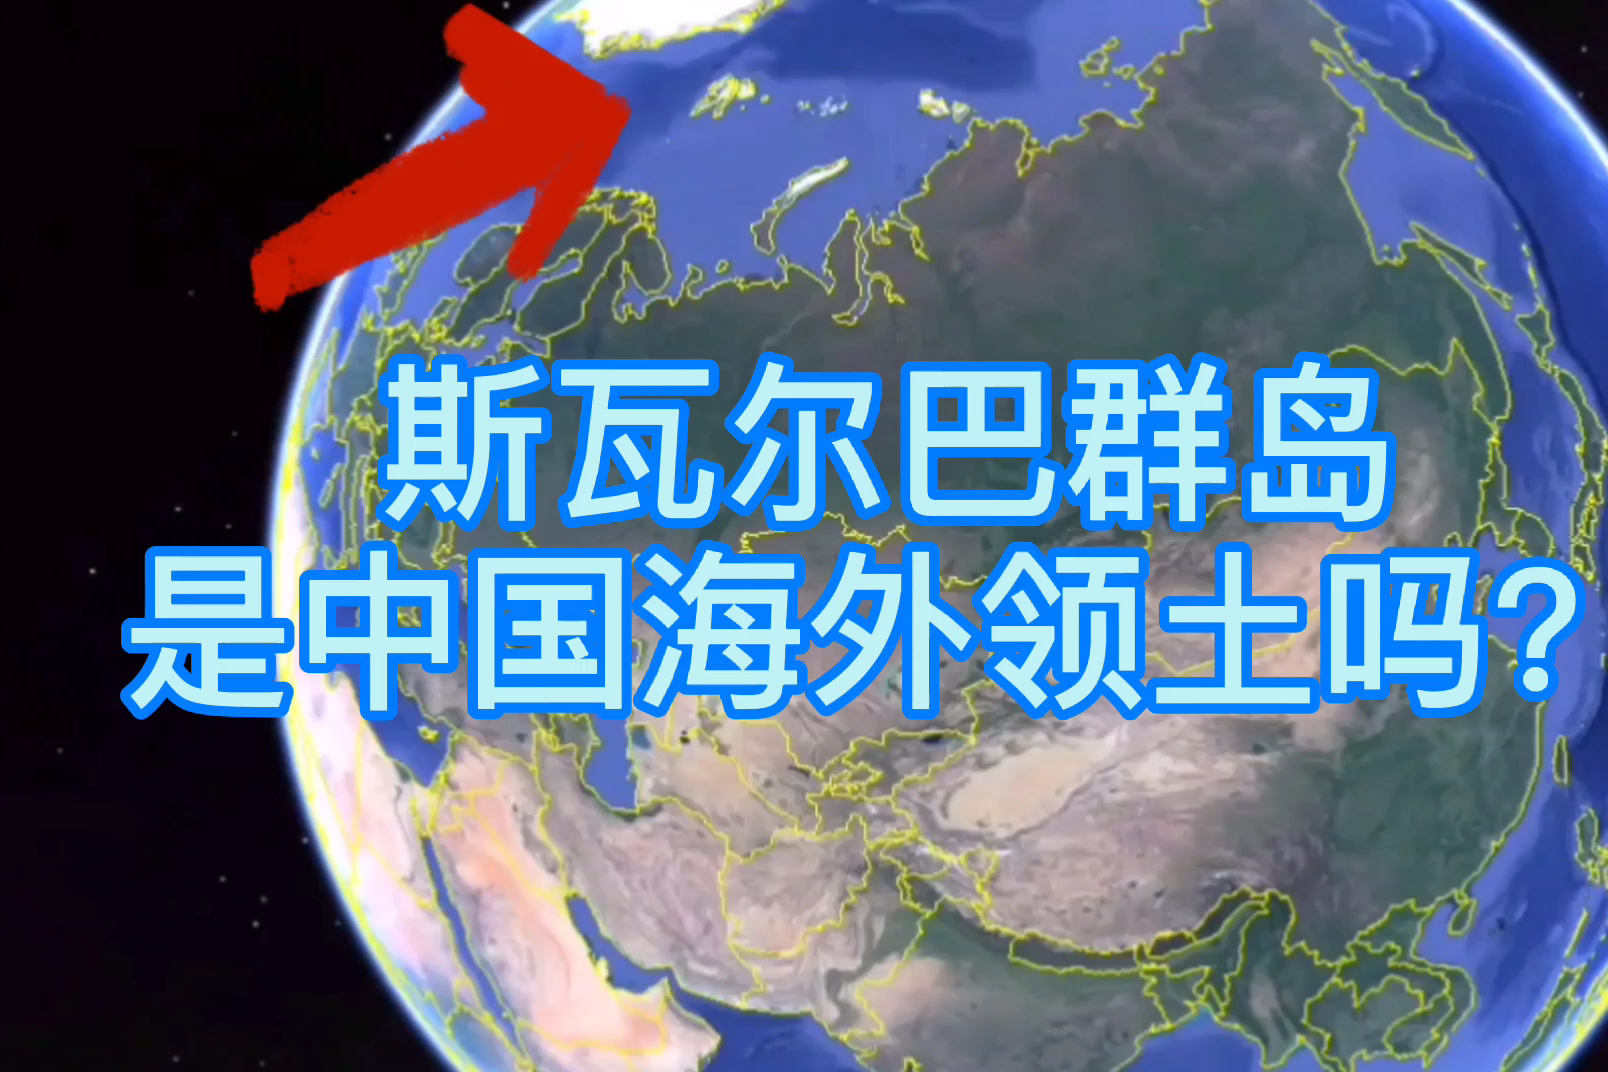 中国在海外有领土吗你想太多了斯瓦尔巴群岛不算